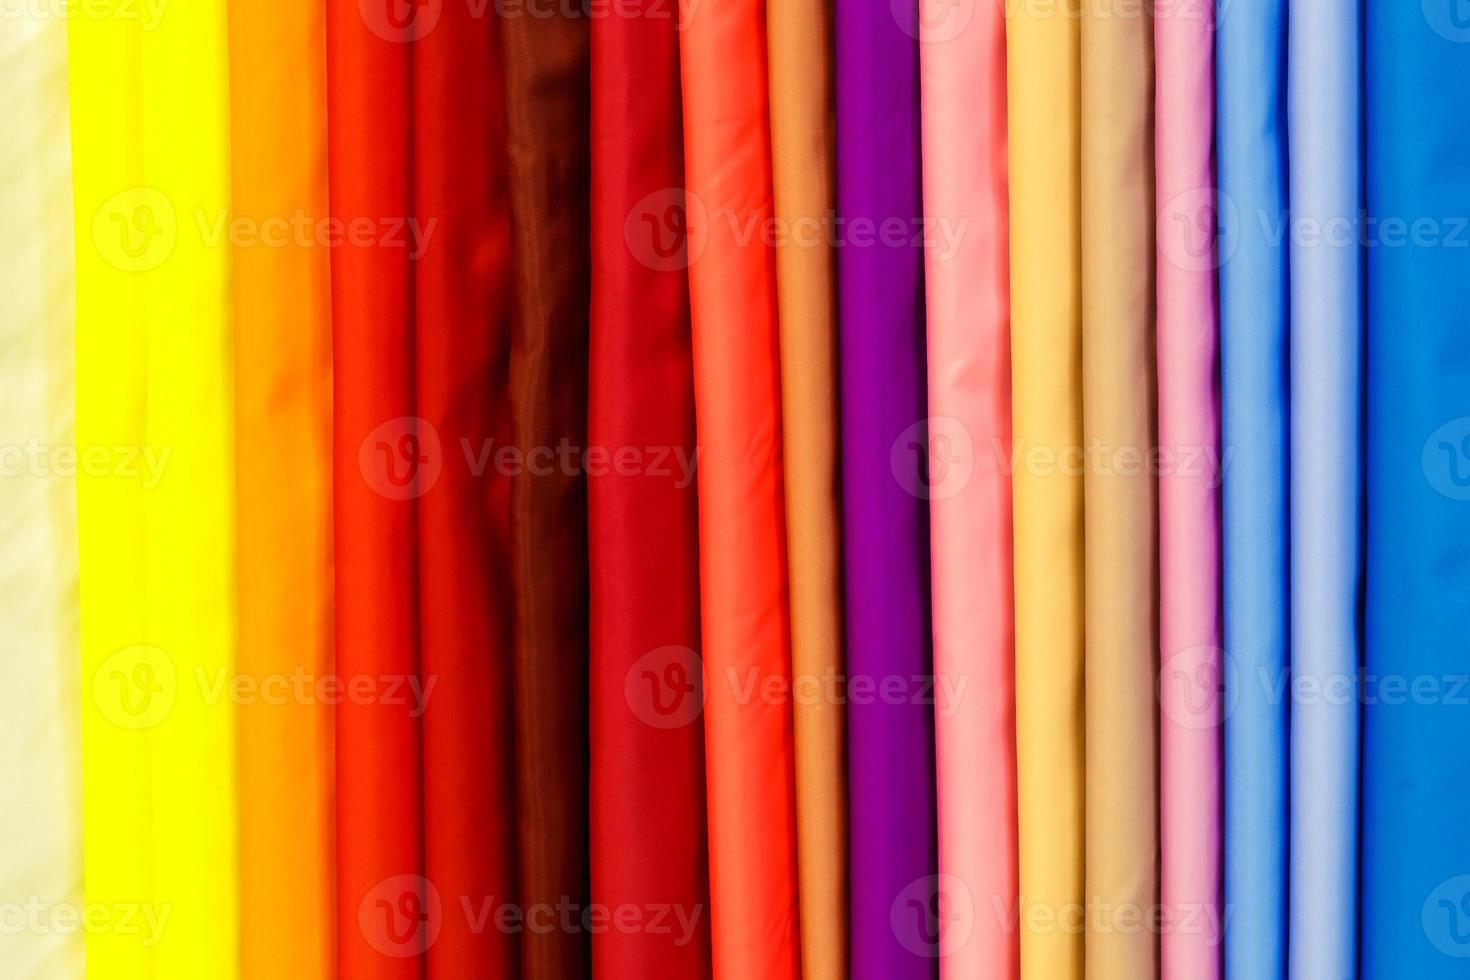 Large sélection de vêtements de tissus de soie textile de couleur différente en rangée dans un magasin de draperies photo